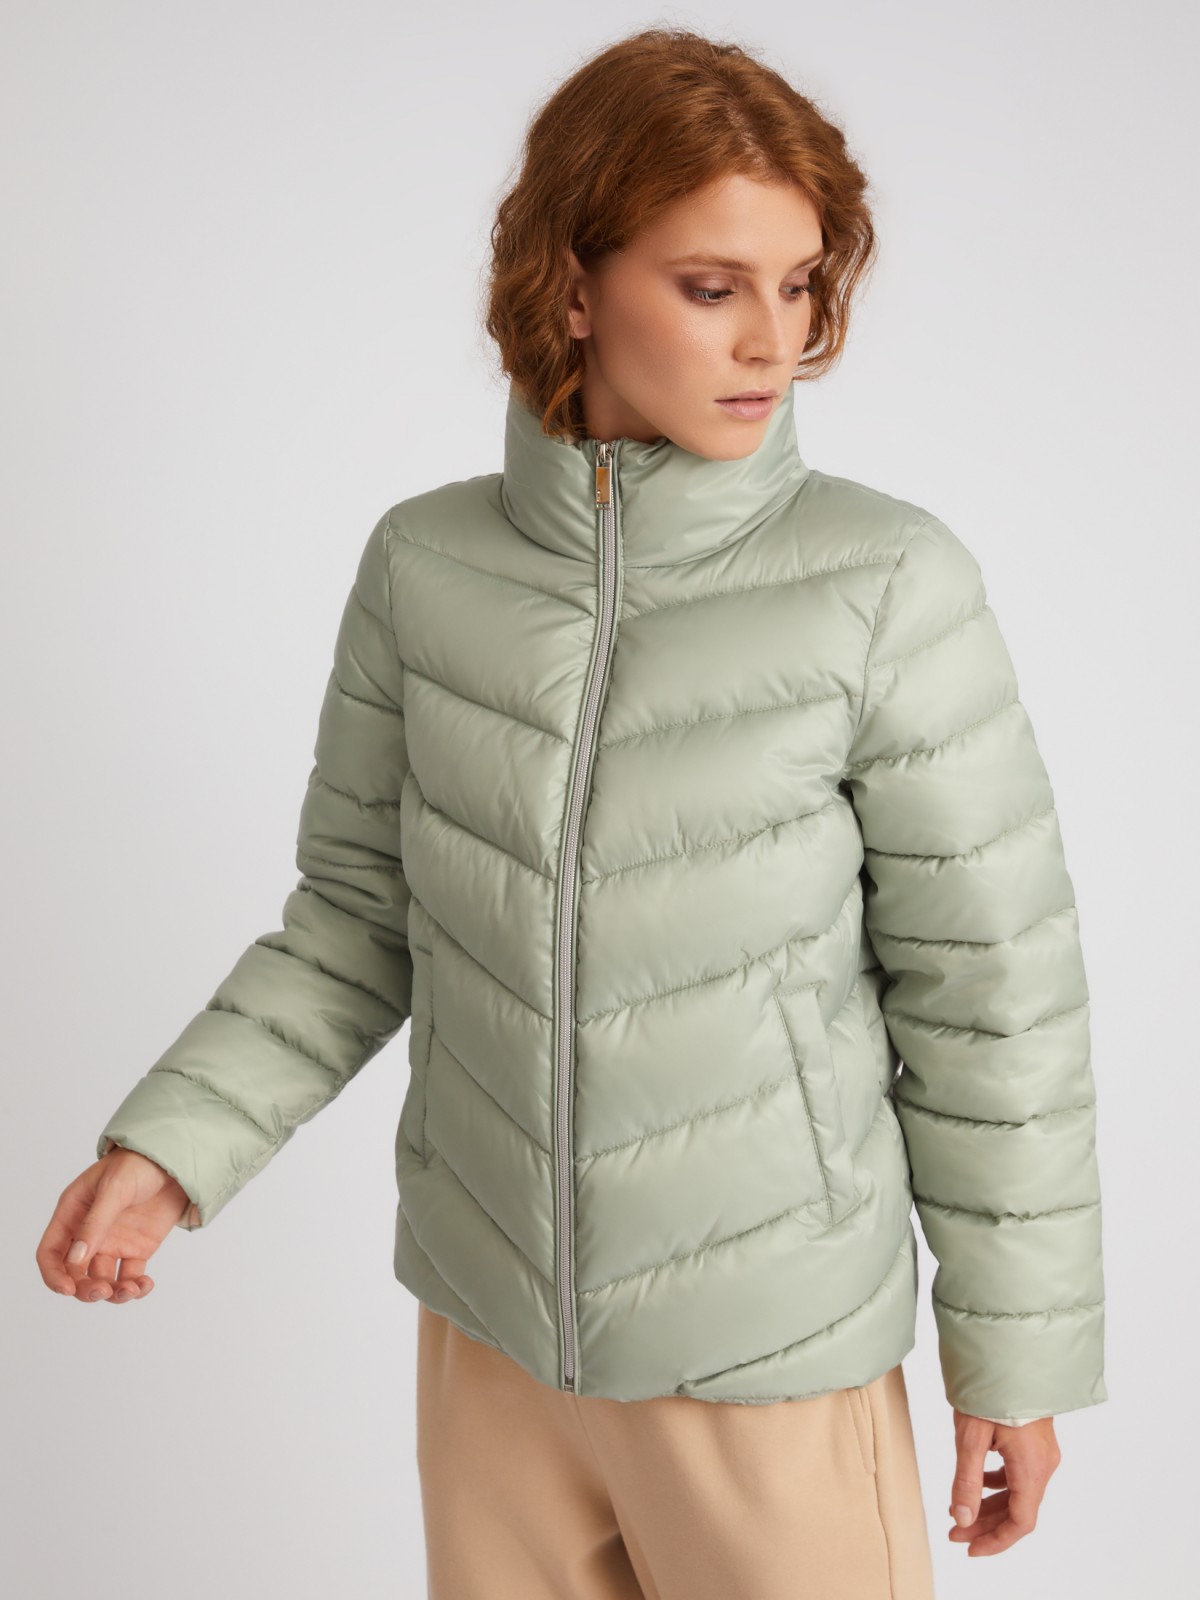 Тёплая стёганая куртка на молнии с высоким воротником zolla 023335102204, цвет светло-зеленый, размер M - фото 4